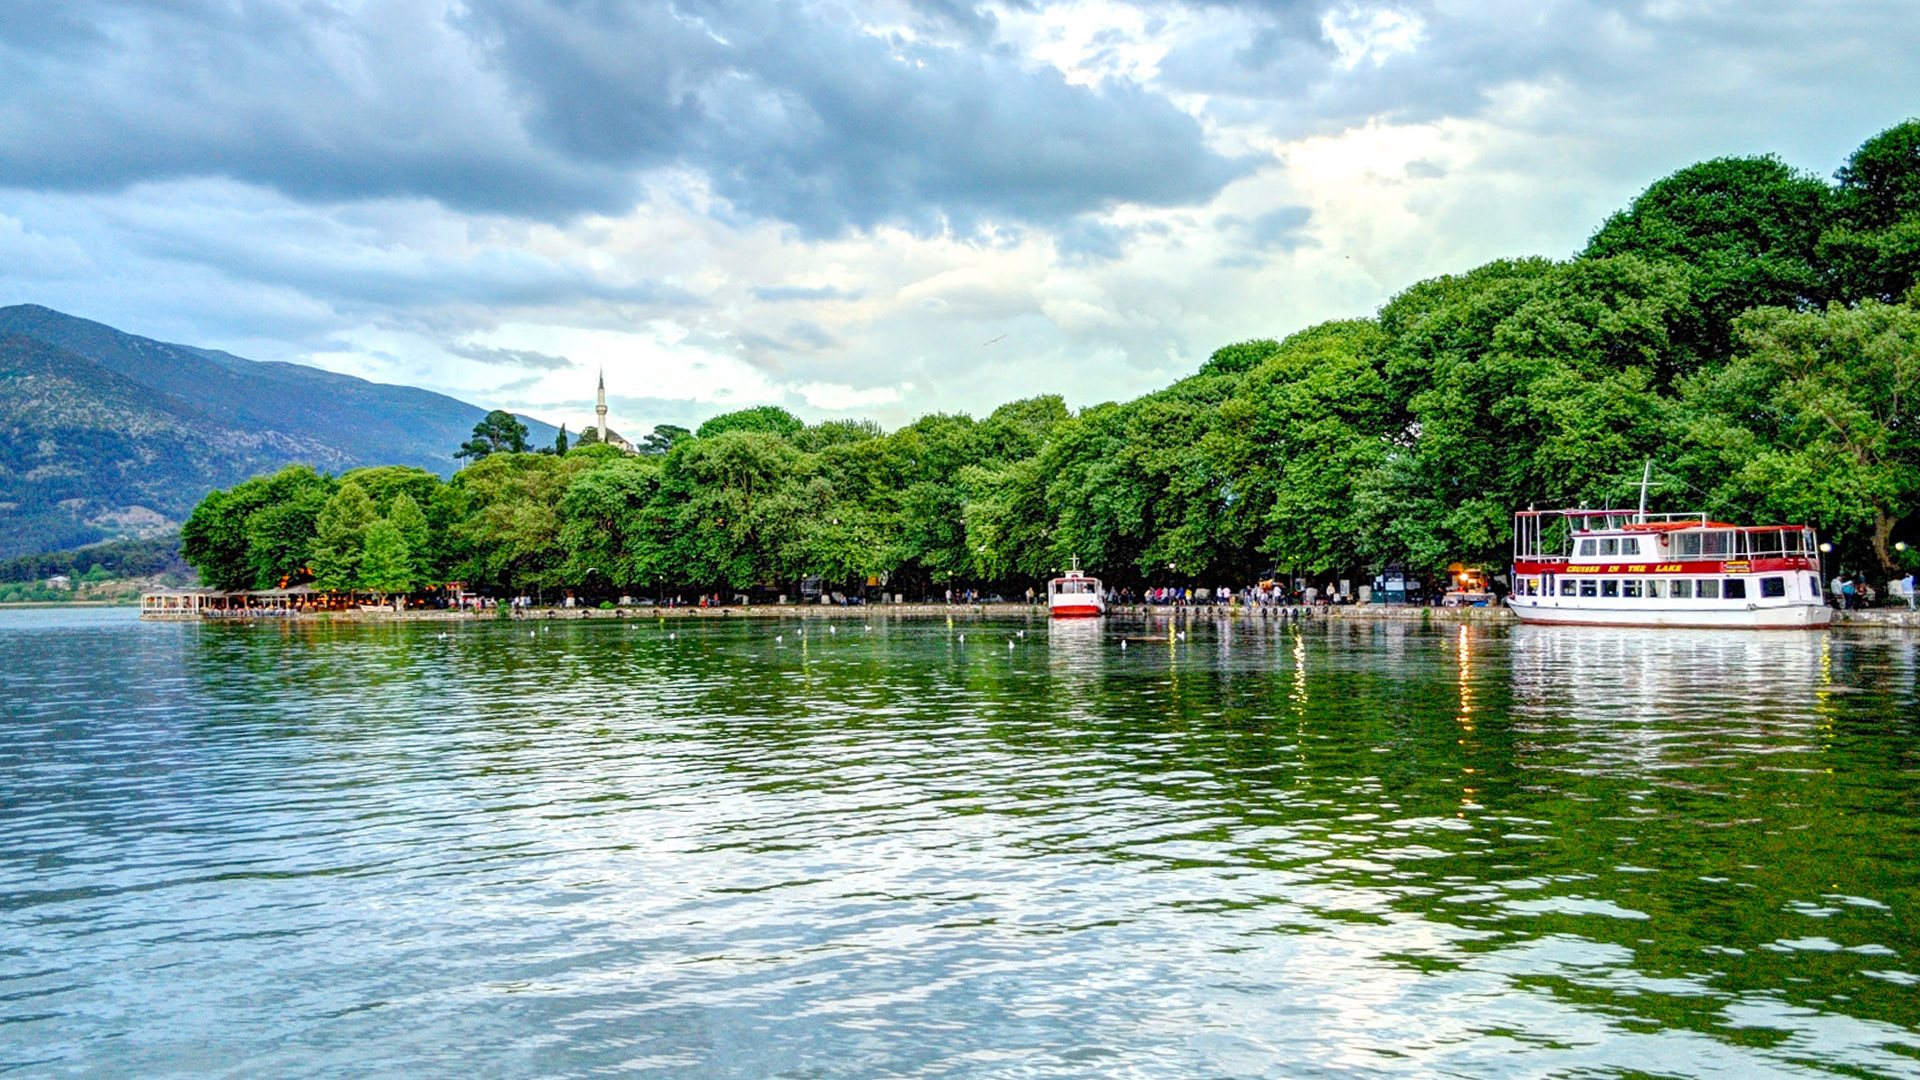 Λίμνη Παμβώτιδα « Καλώς Ήλθατε στον ξενώνα Ιτς Καλέ στα Ιωάννινα – |  Ξενοδοχεία Ιωάννινα | Hotel Ioannina Ξενοδοχεία | Ιωάννινα | Κάστρο  Ιωαννίνων | Διακοπές Ιωάννινα